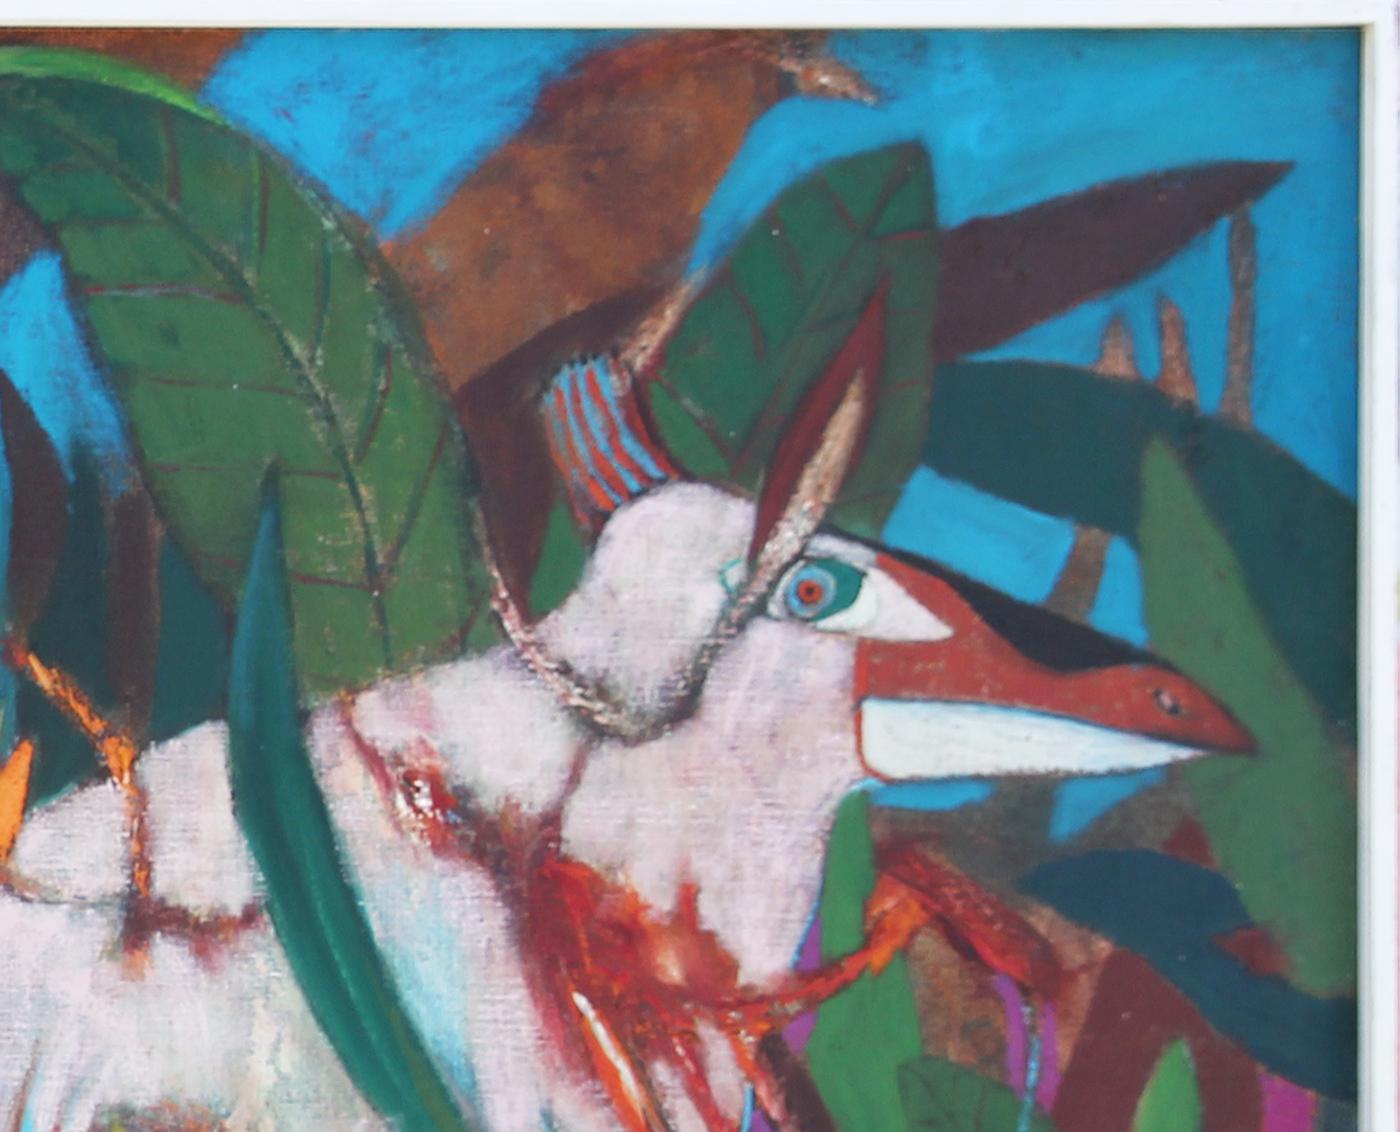 Modernes farbenfrohes abstraktes Gemälde des texanischen Künstlers Don Snell. Das Werk zeigt in der Mitte zwei nackte weibliche Figuren, die neben einem Tier in einer tropischen Landschaft stehen. Signiert rechts unten auf der Vorderseite. Derzeit